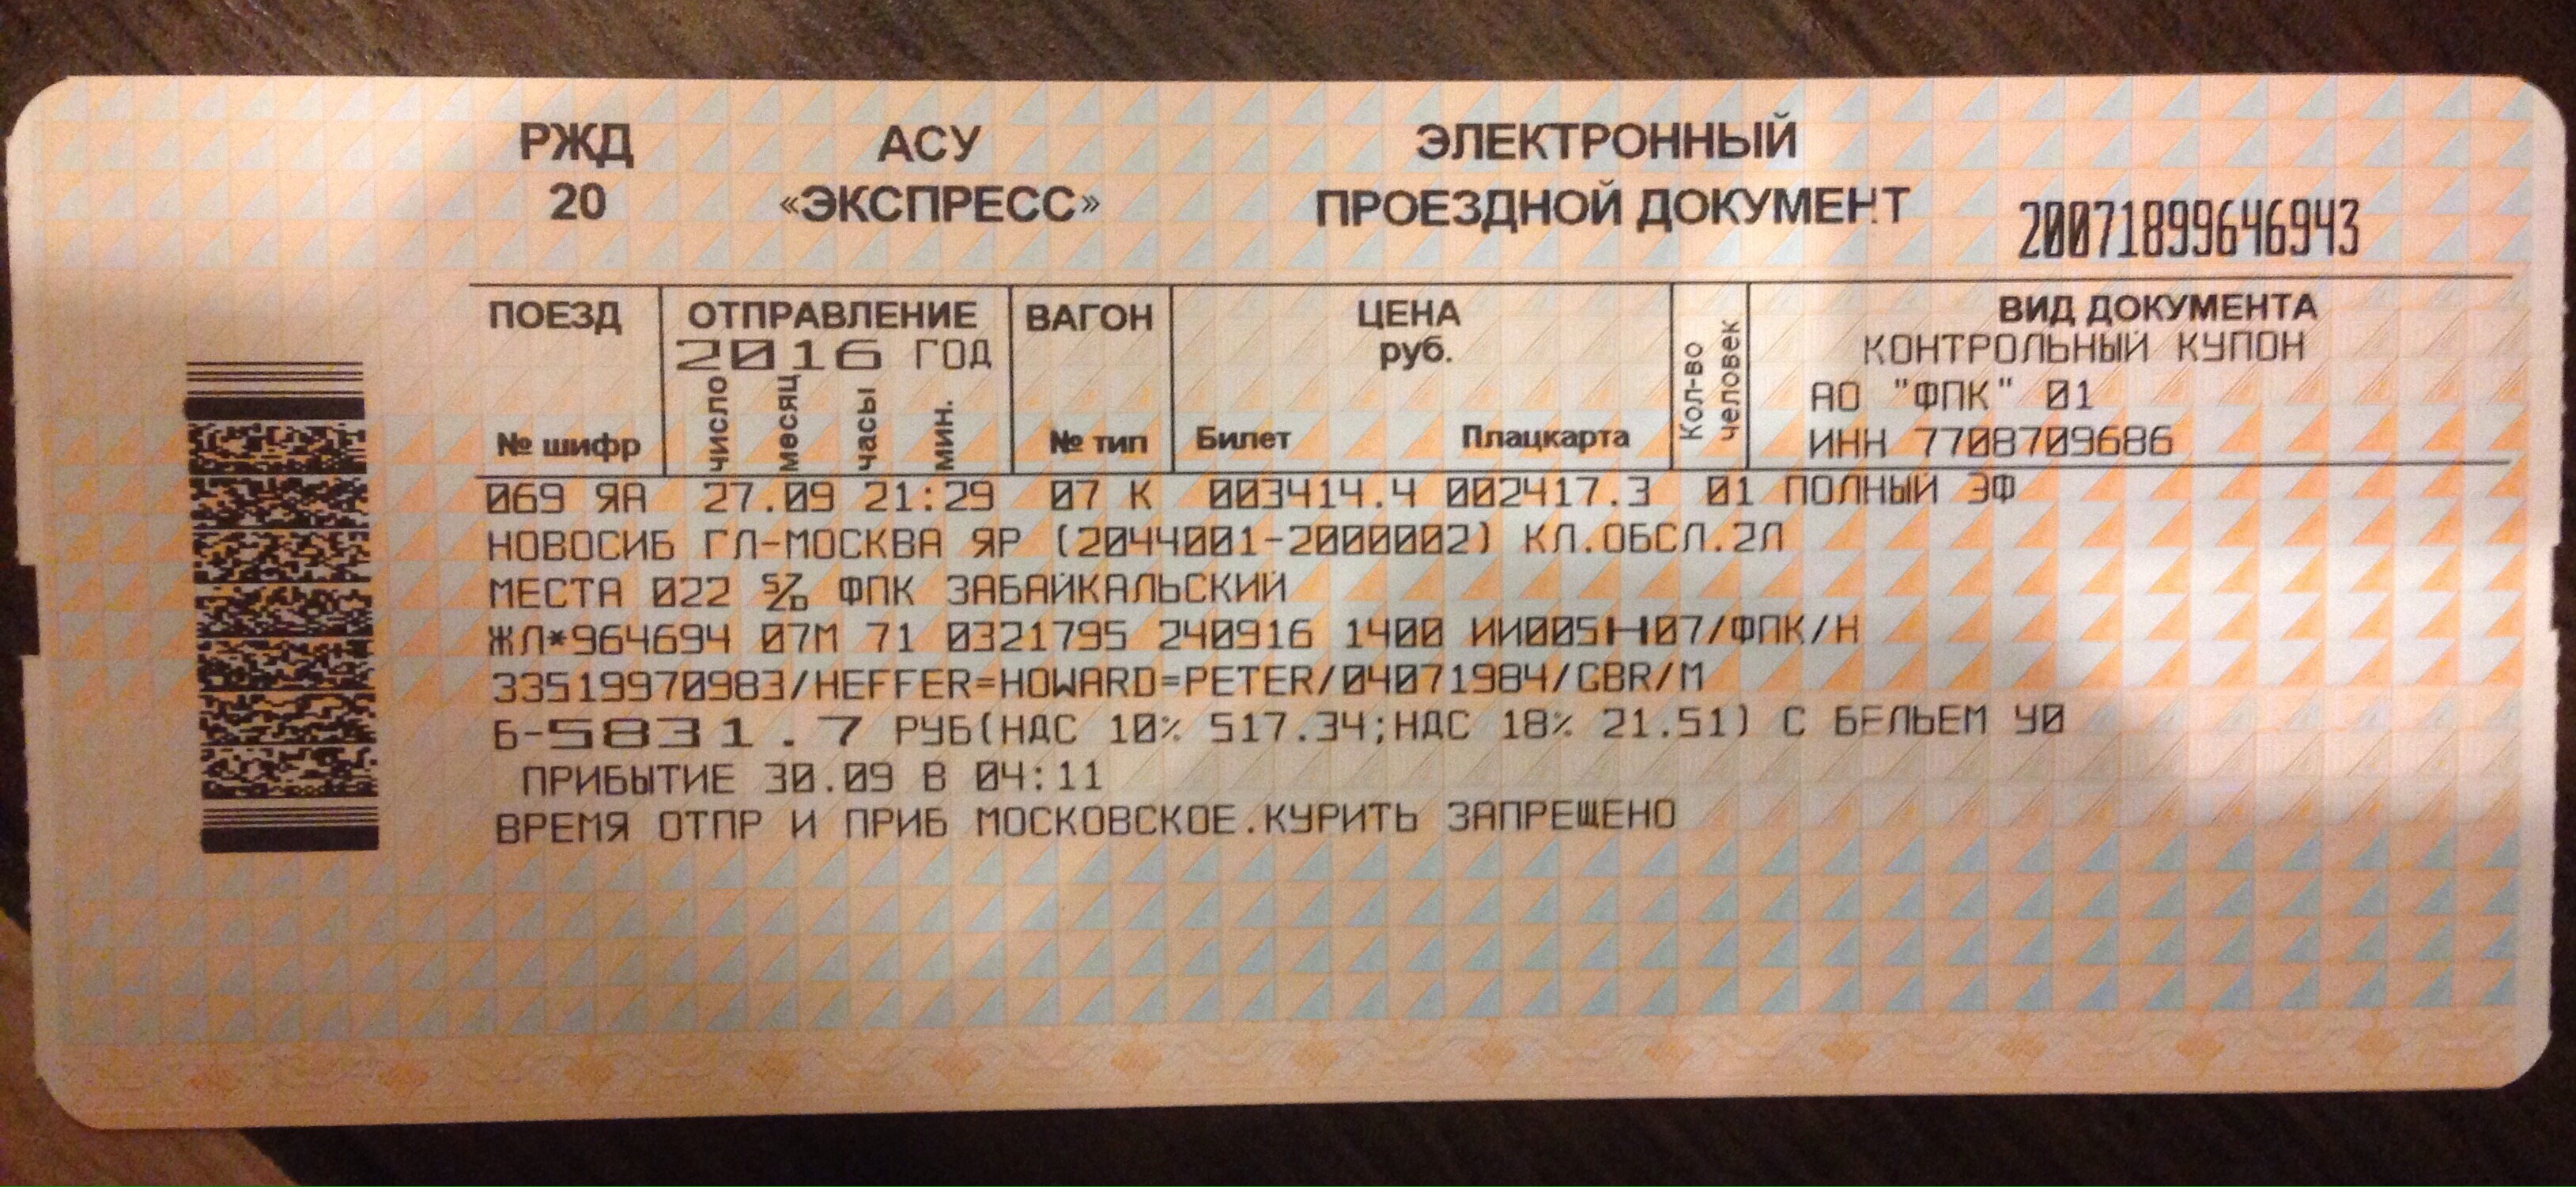 Поезд 91 мурманск москва расписание. Билеты РЖД. Билет АСУ экспресс. Билеты на поезд РЖД. Электронный проездной билет на поезд.